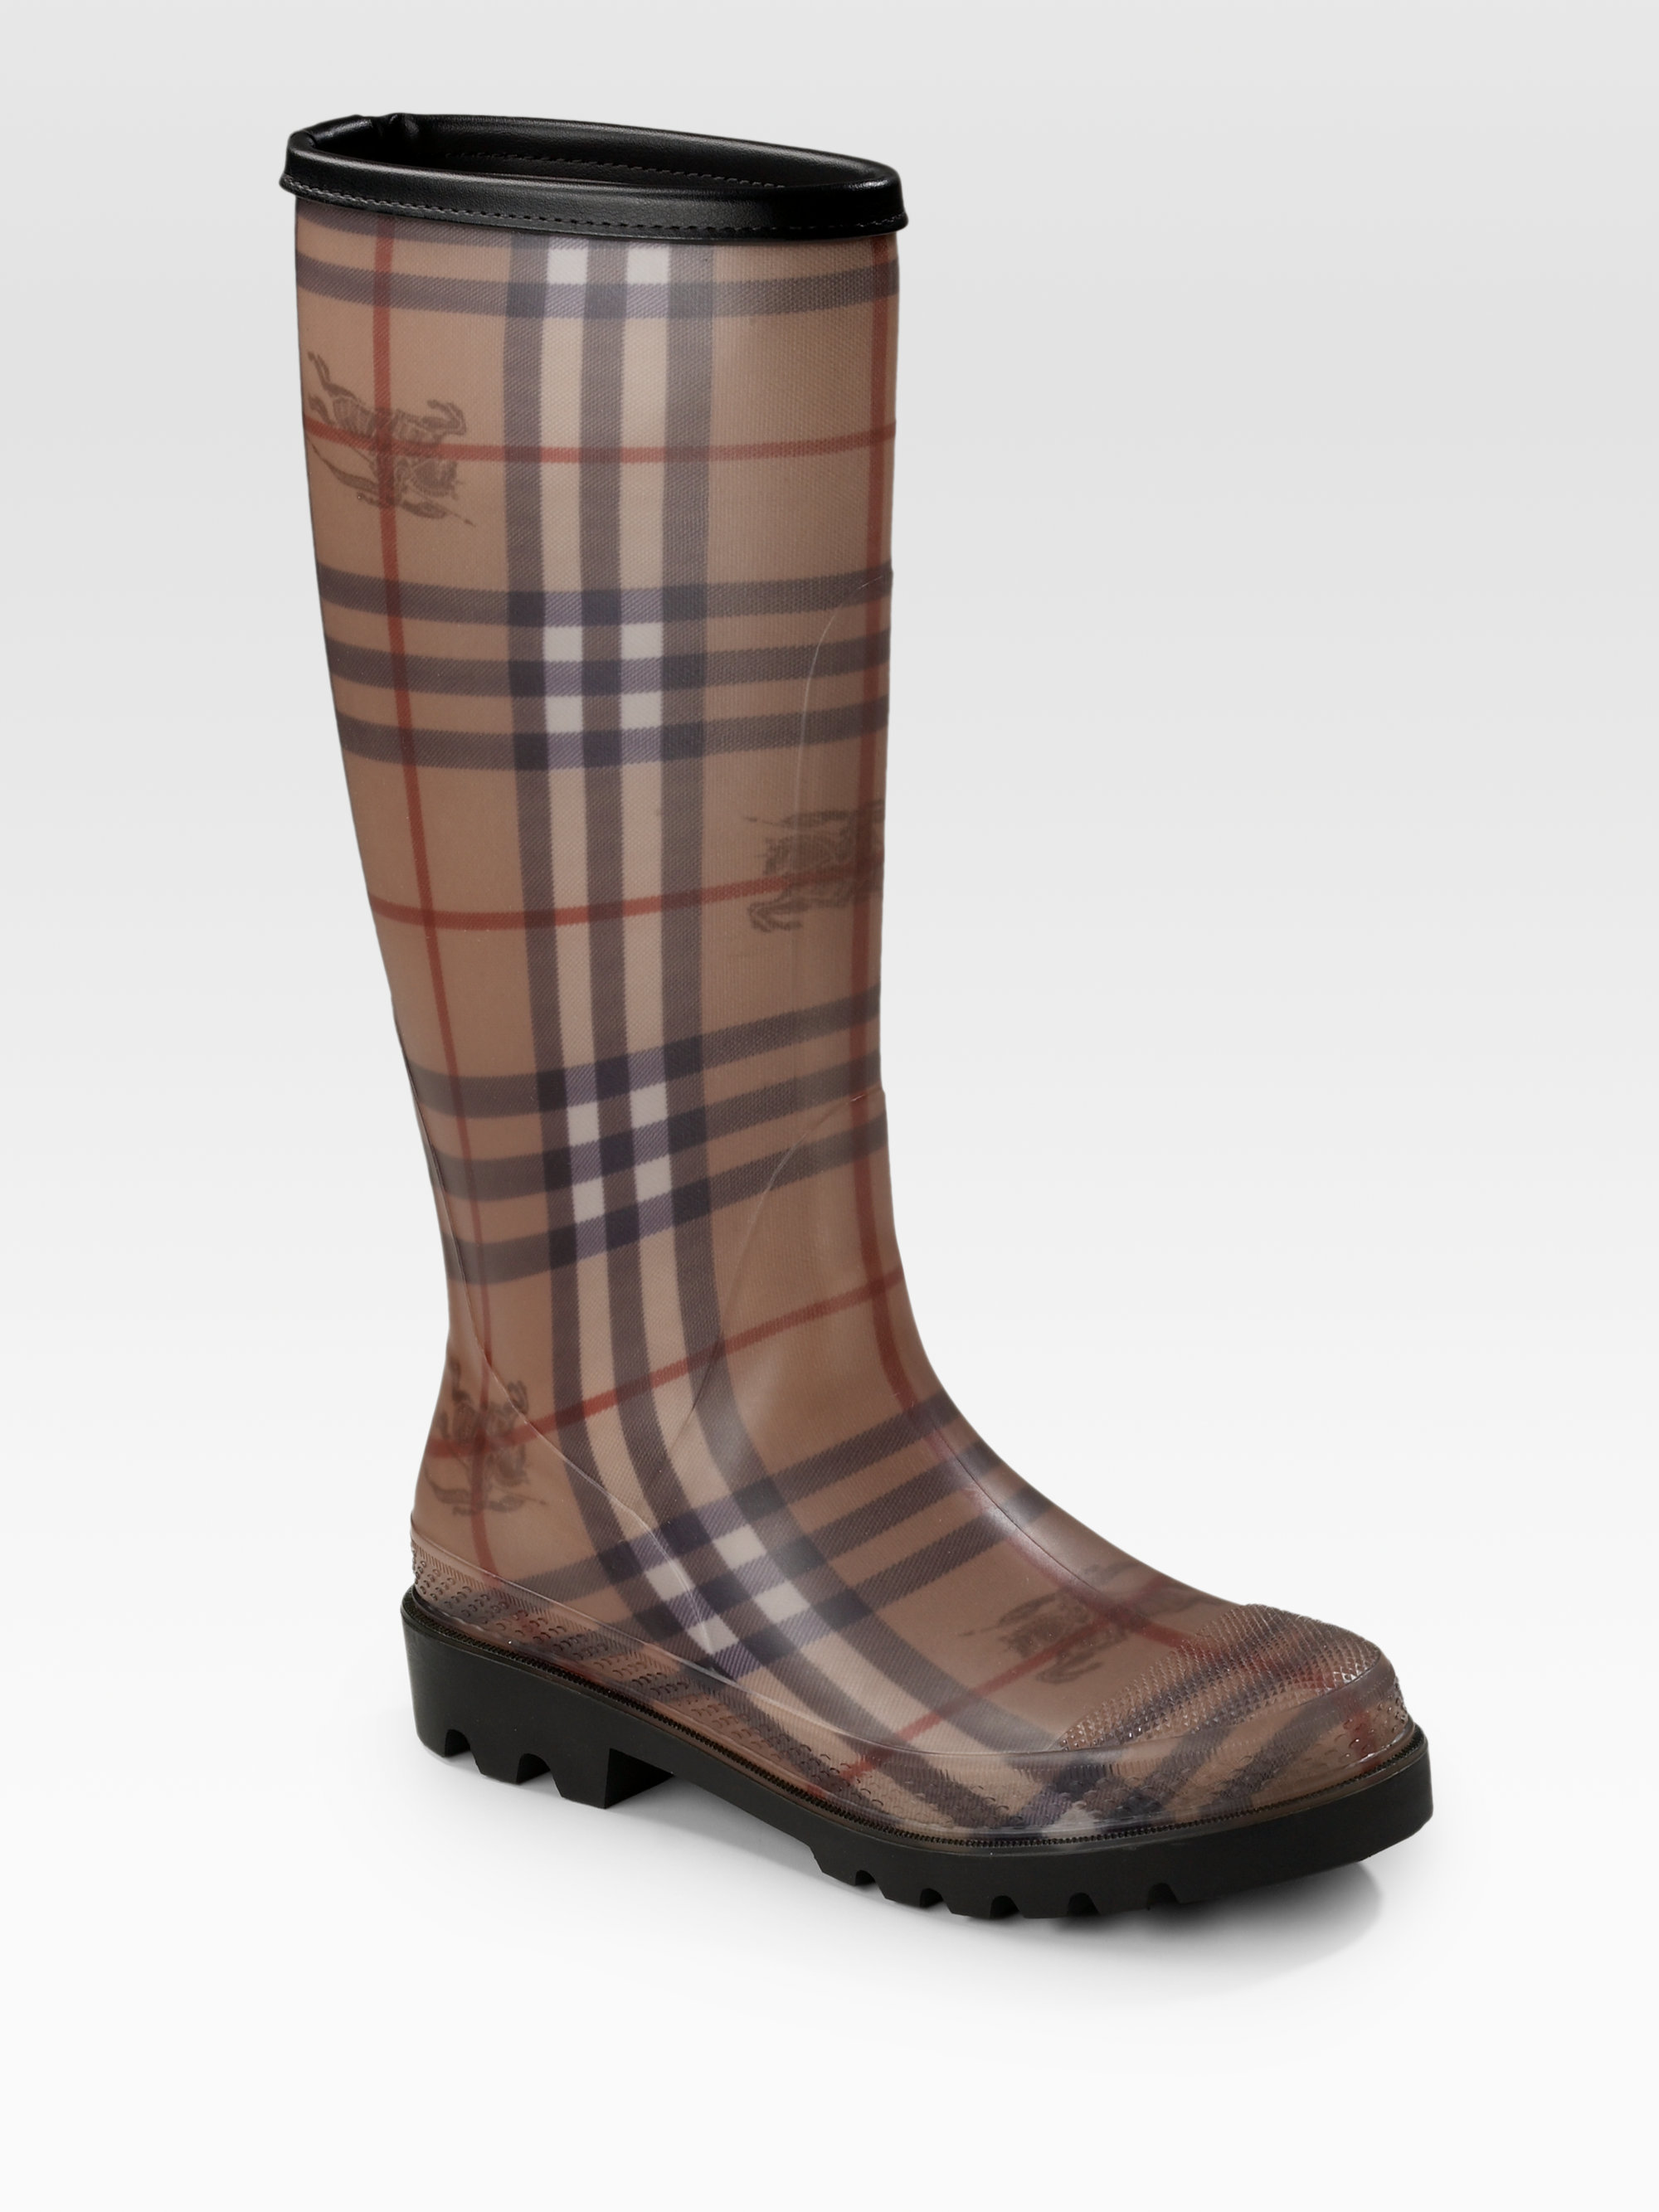 burberry rain boots bordeaux